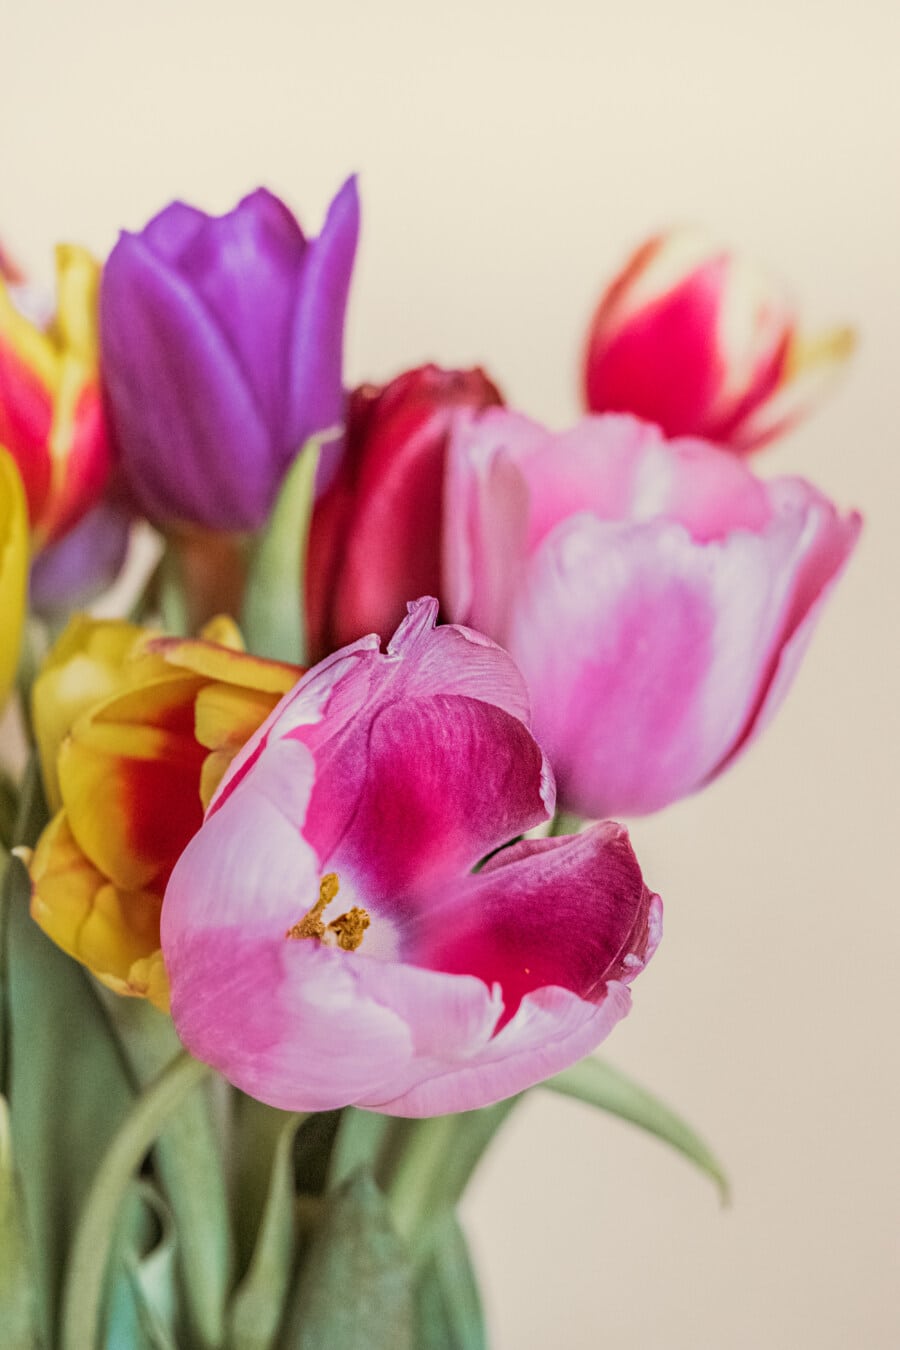 Tulpen, Blumenstrauß, Rosa, Blütenblätter, Cluster, Blumen, Tulpe, Frühling, Blume, Blüte